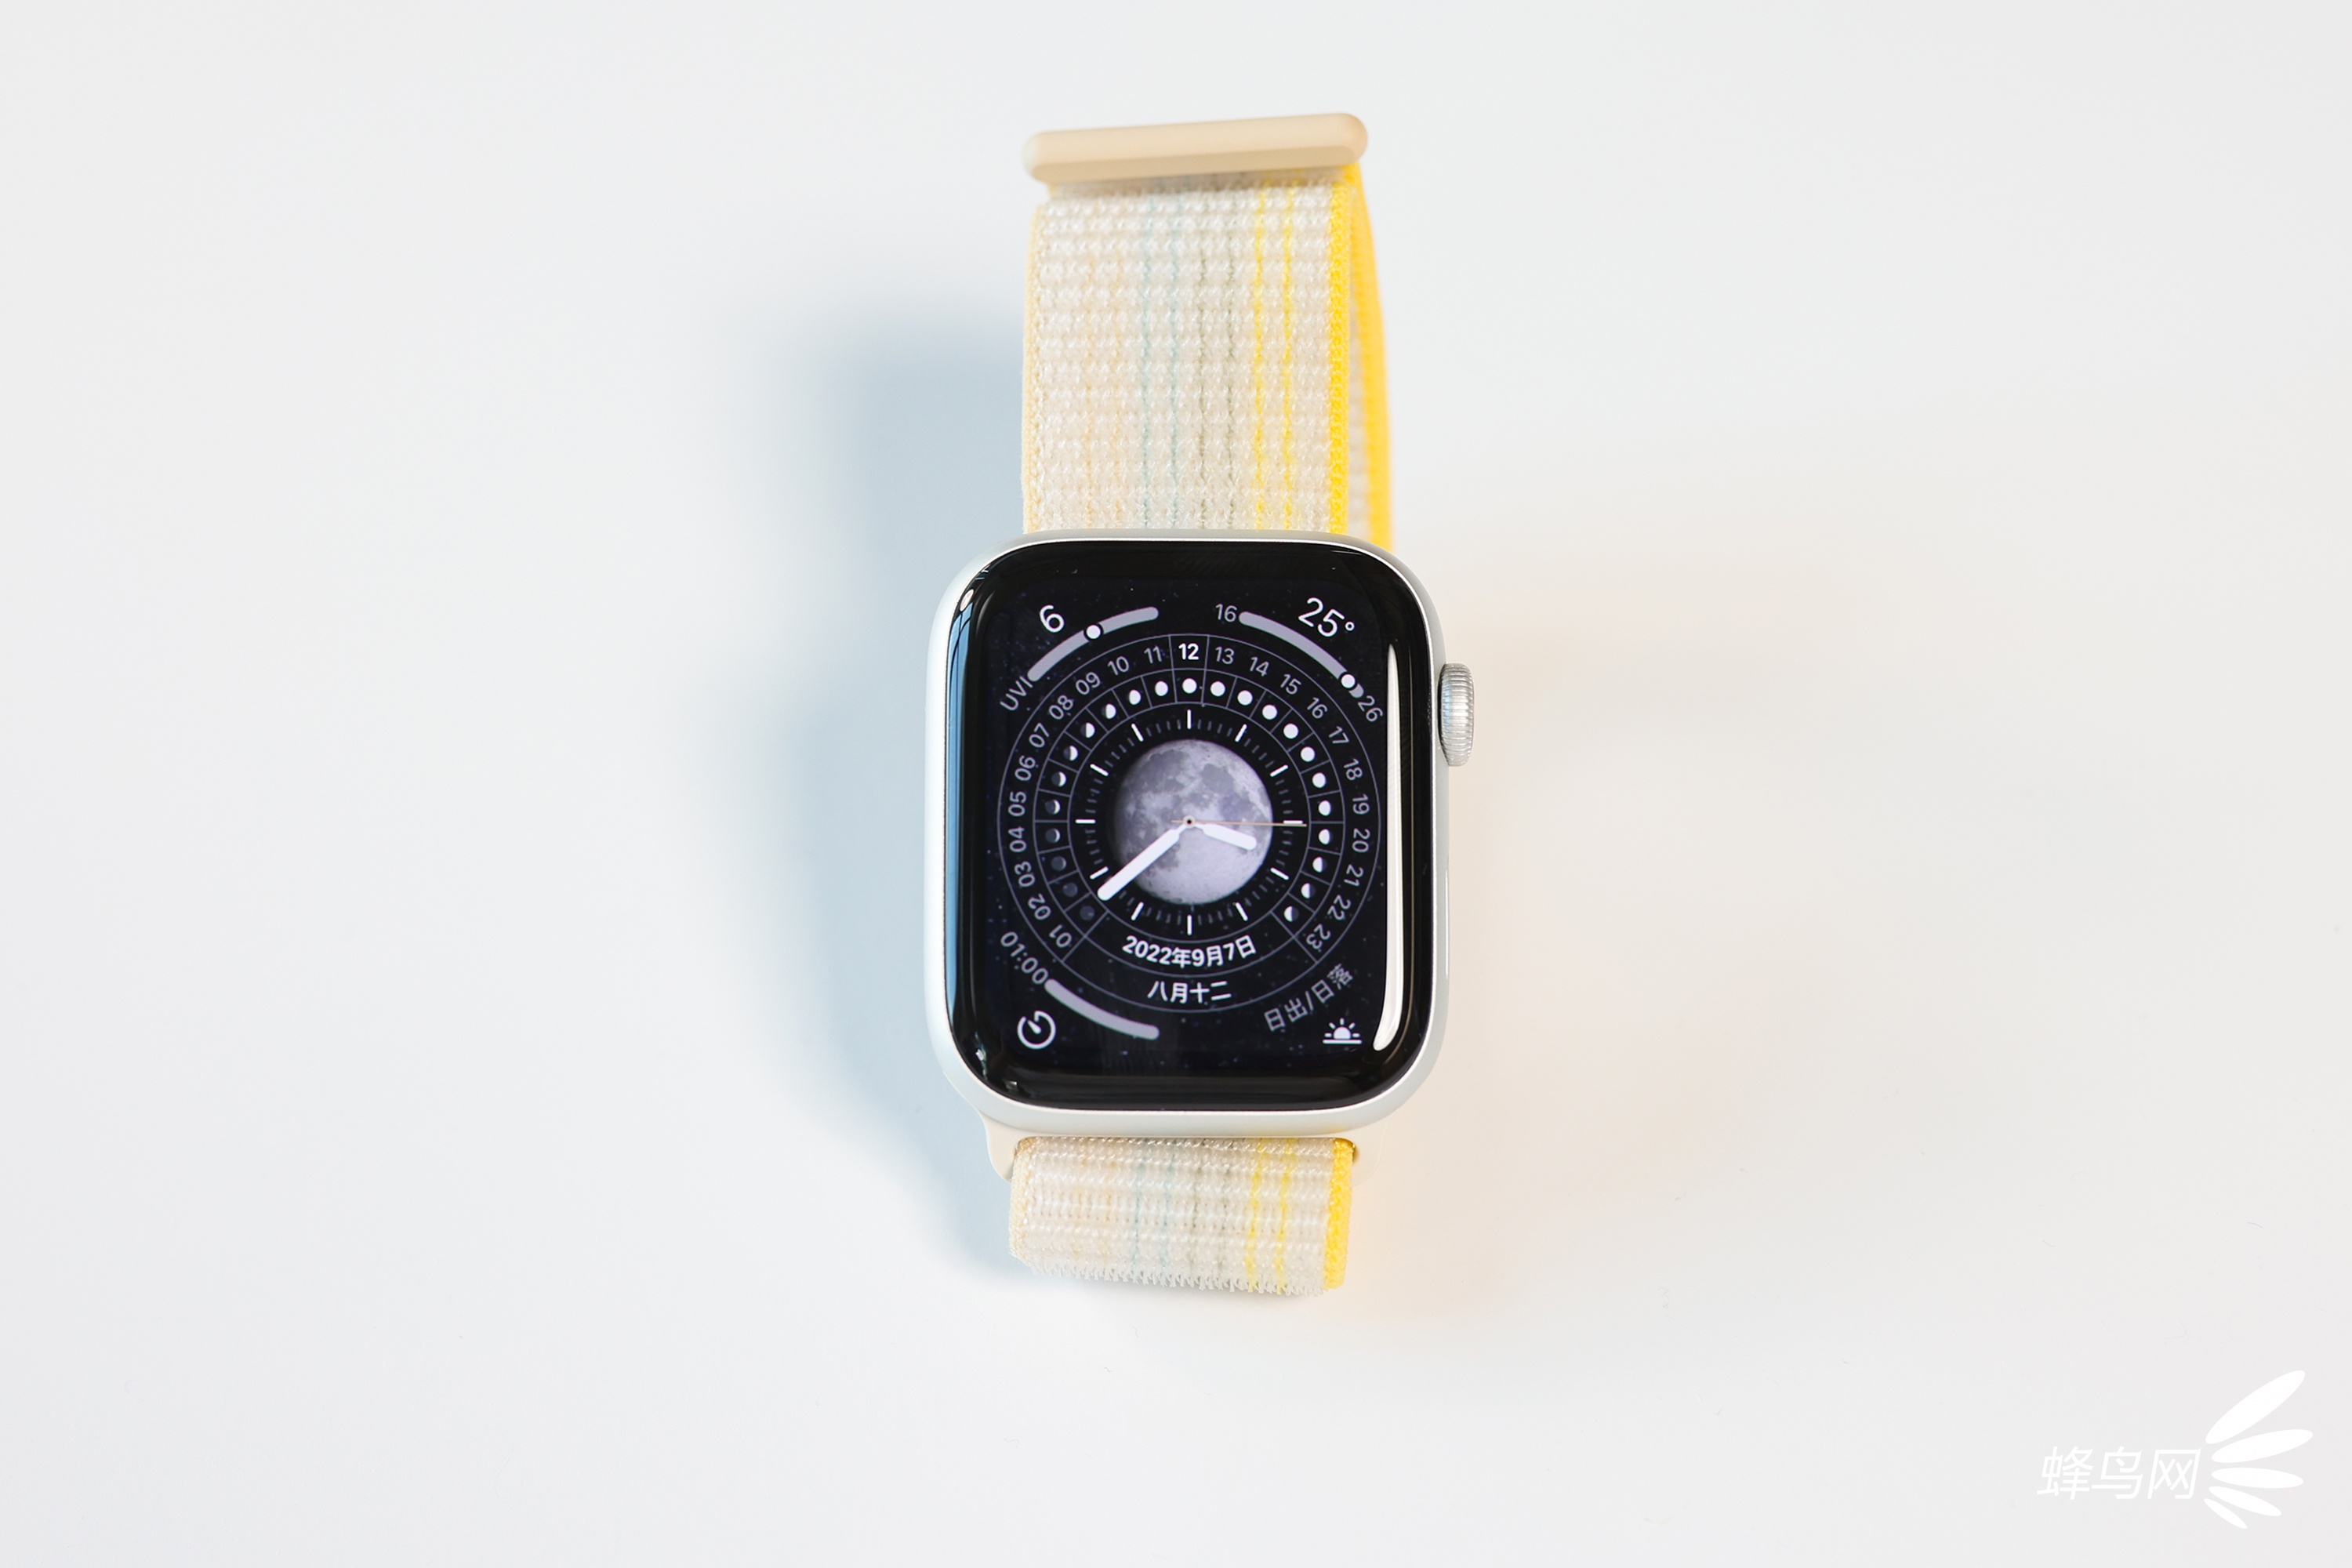 体温侦测车祸检测 新款Apple Watch真机图赏